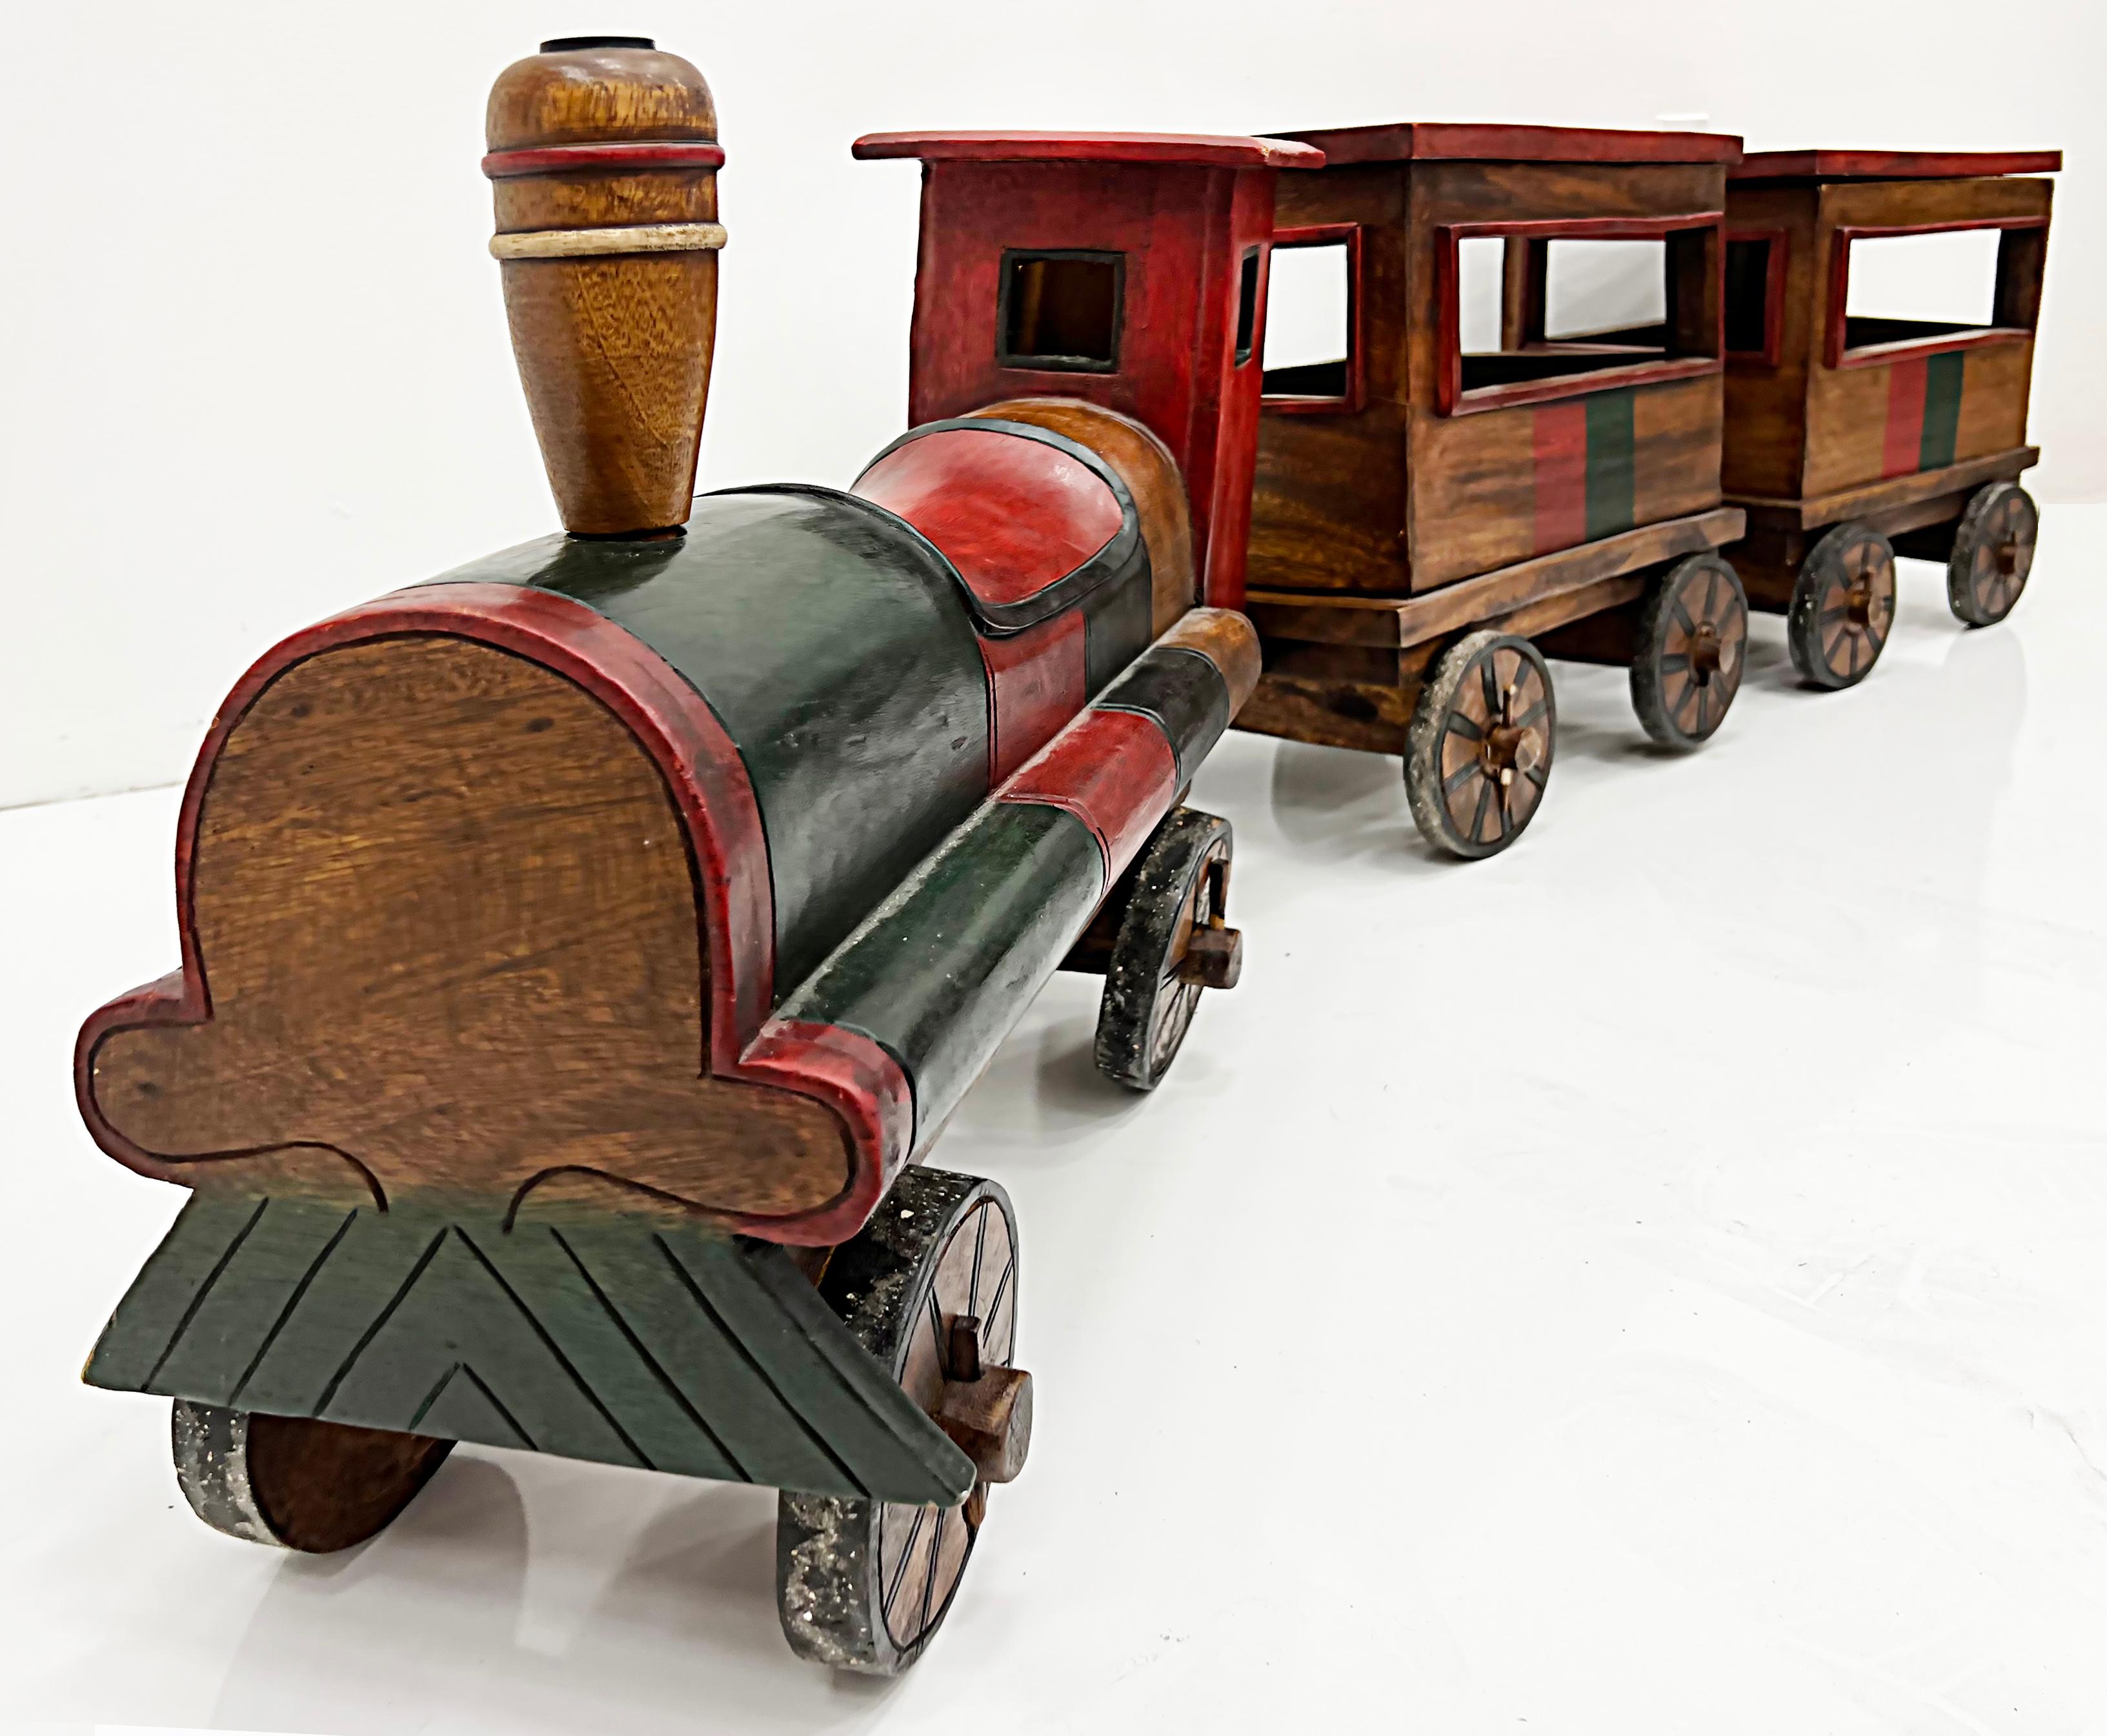 Overscale vintage geschnitztes Holz Folk Art Toy Zug Set

Zum Verkauf angeboten wird eine übergroße Vintage geschnitzt Holz Volkskunst Spielzeug Zug gesetzt. Das Set besteht aus 3 Einzelteilen, darunter der Motor und 2 Autos, die eine tolle